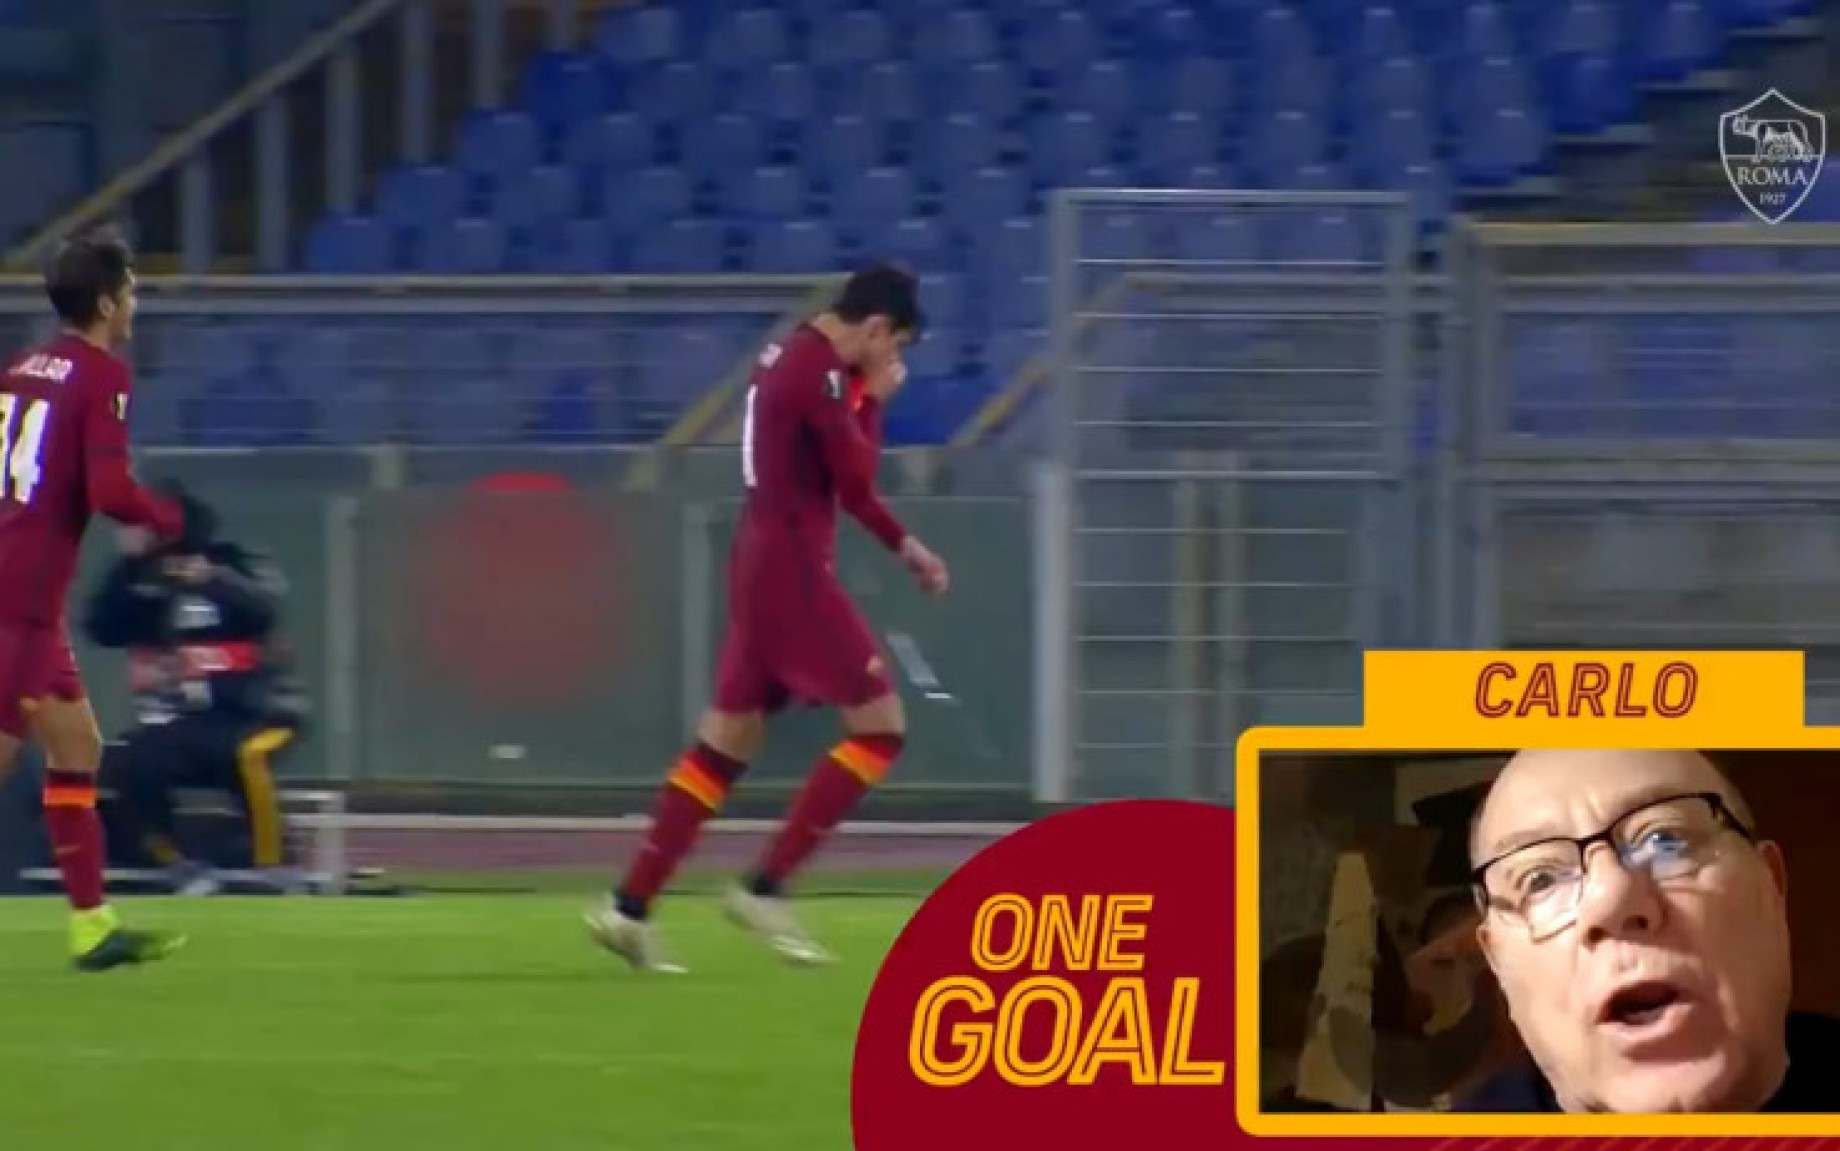 Roma_One_Goal_Screen_1.jpg